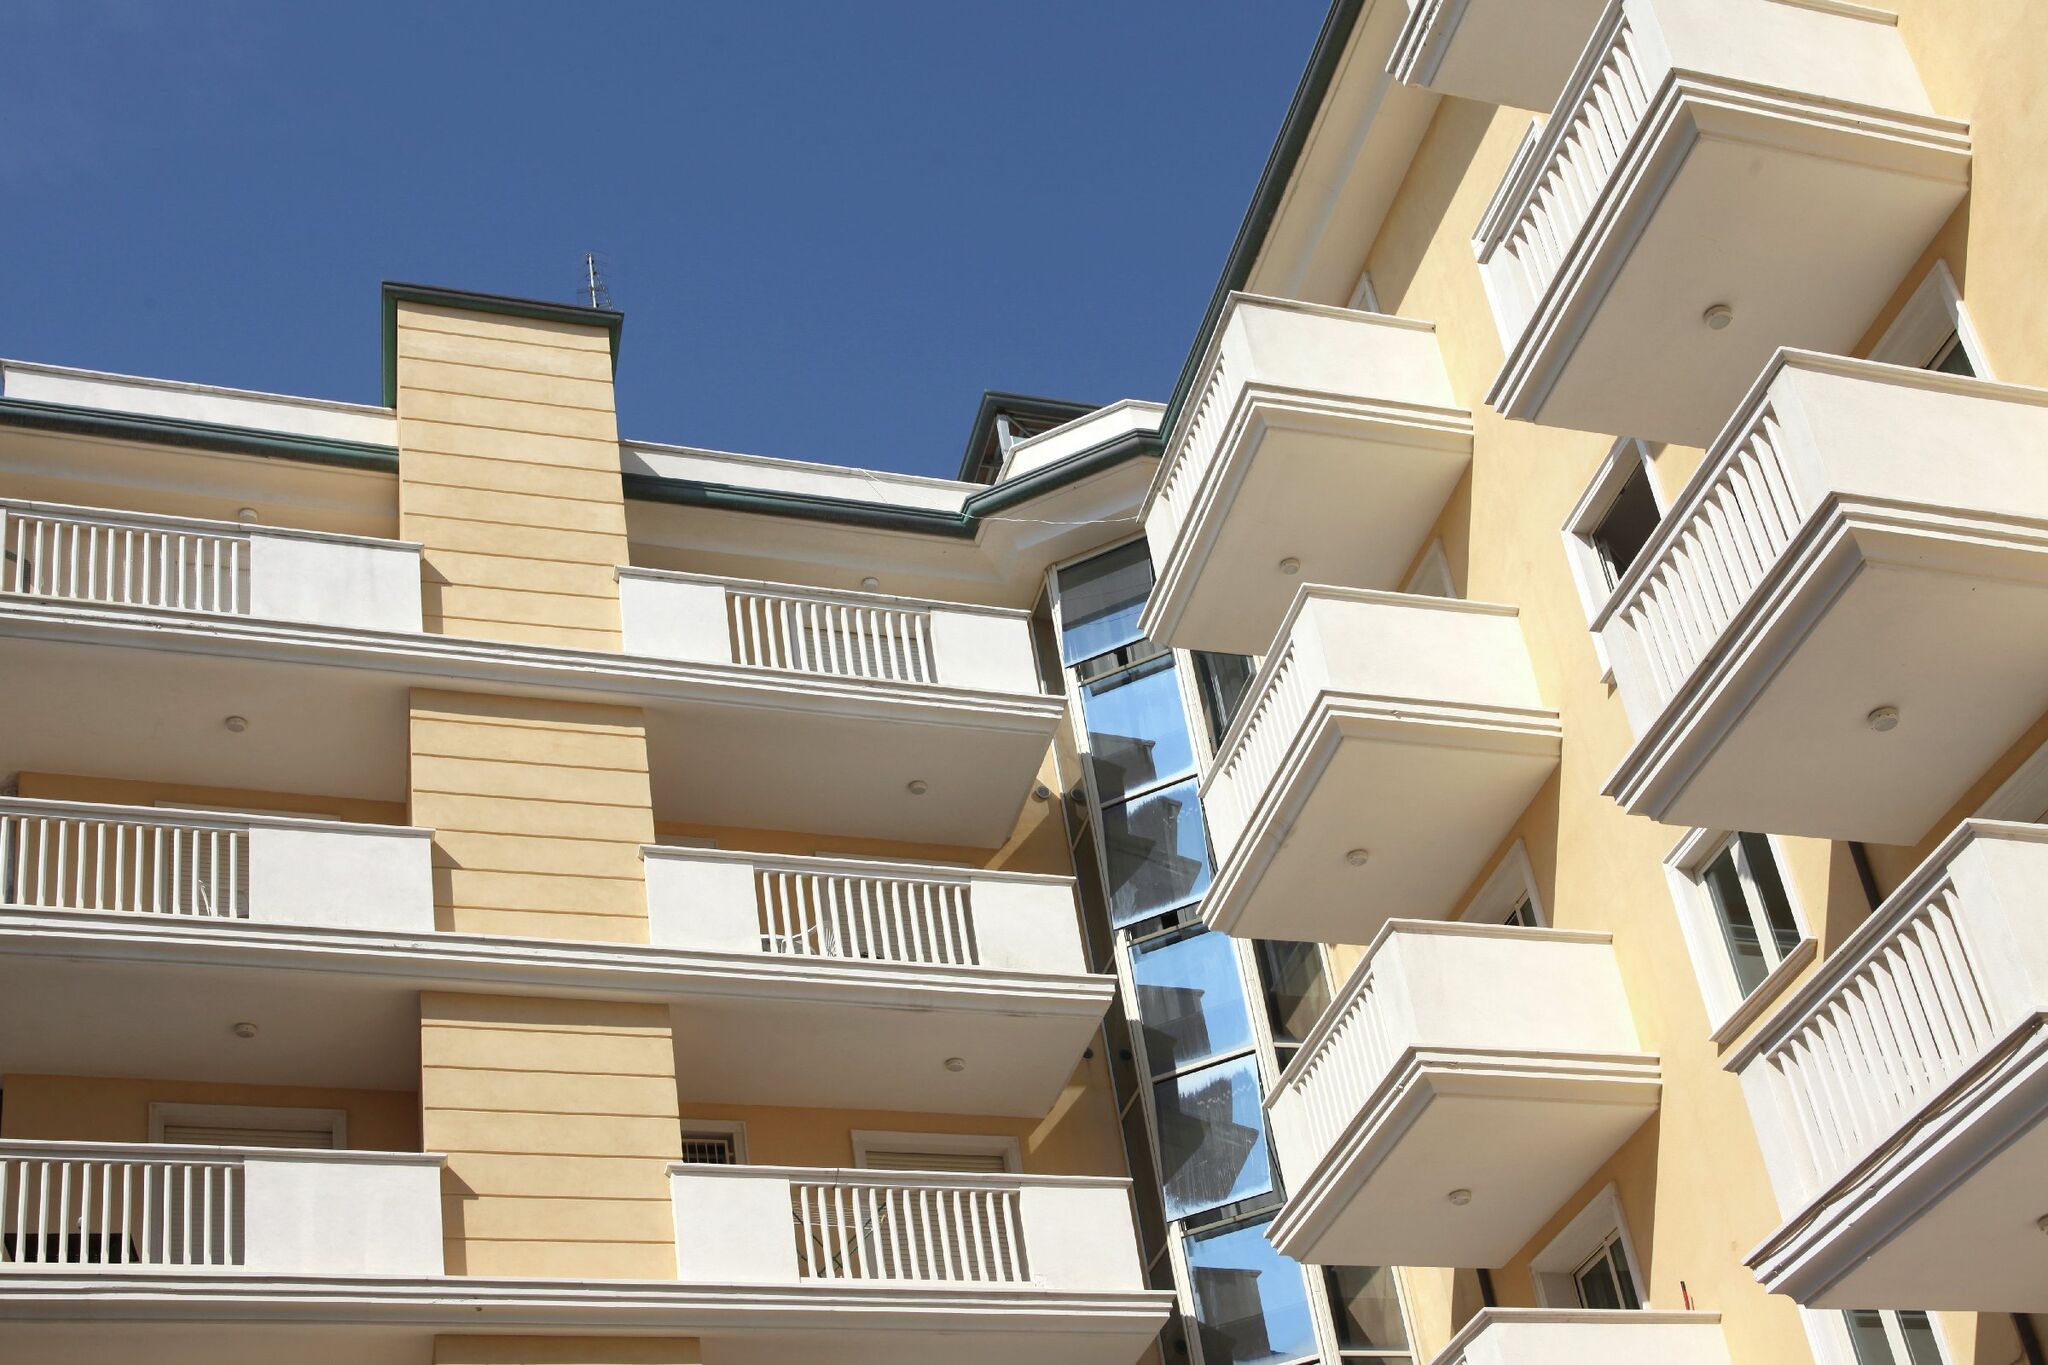 2-Personen-Ferienwohnung in Rimini mit Balkon, in Strandnähe